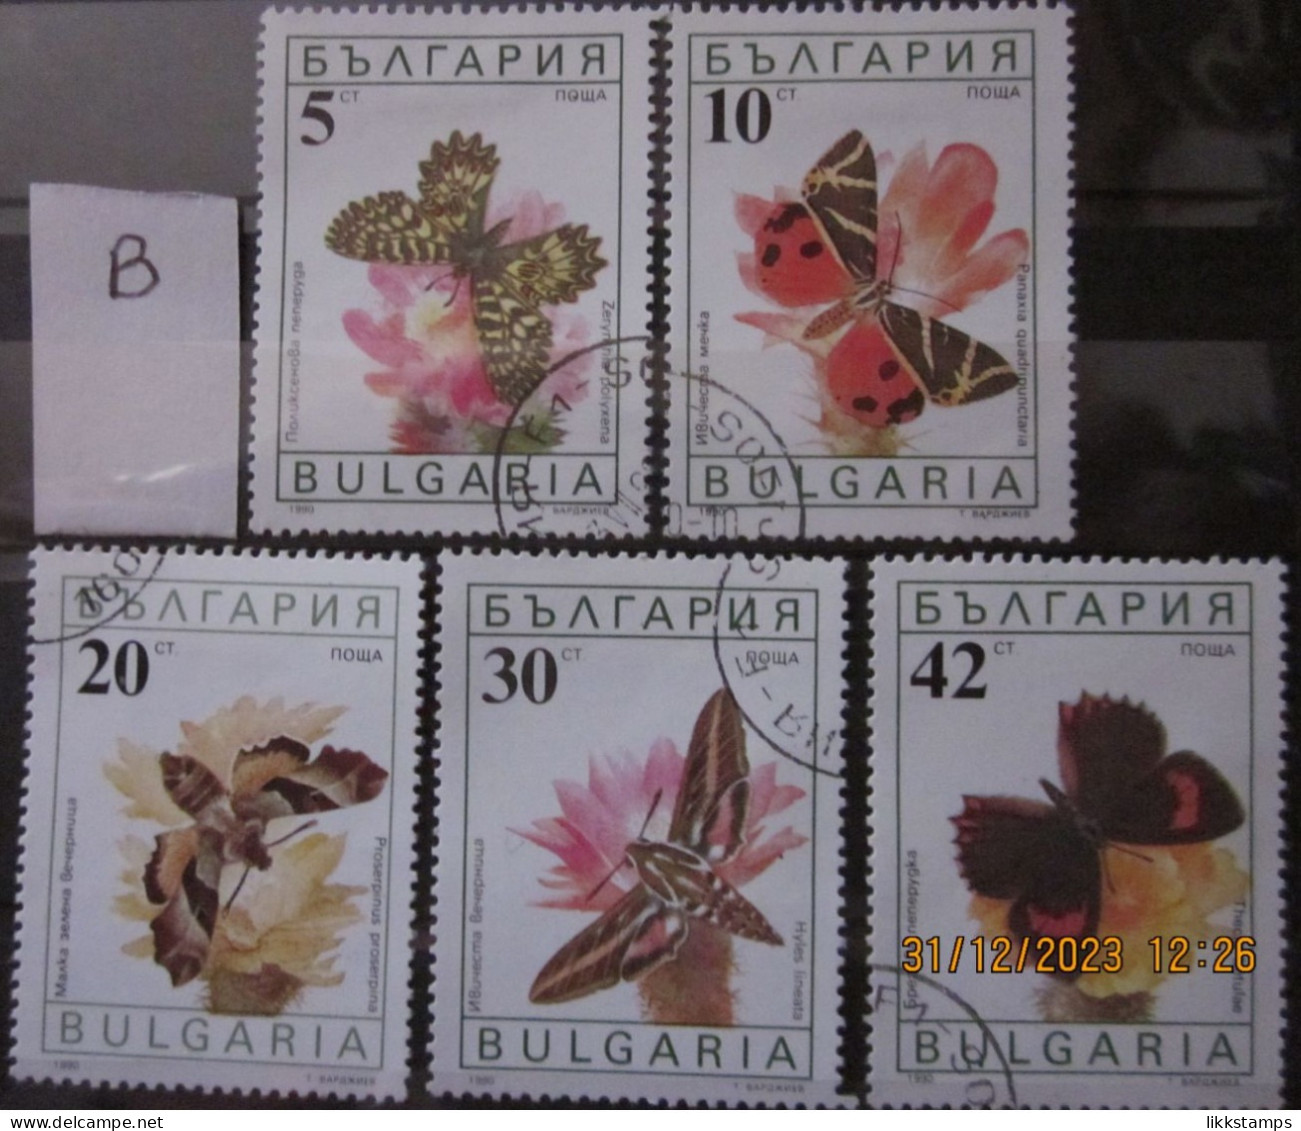 BULGARIA 1990 ~ S.G. 3699 - 3703, ~ 'LOT B' ~ BUTTERFLIES AND MOTHS. ~  VFU #02917 - Gebruikt